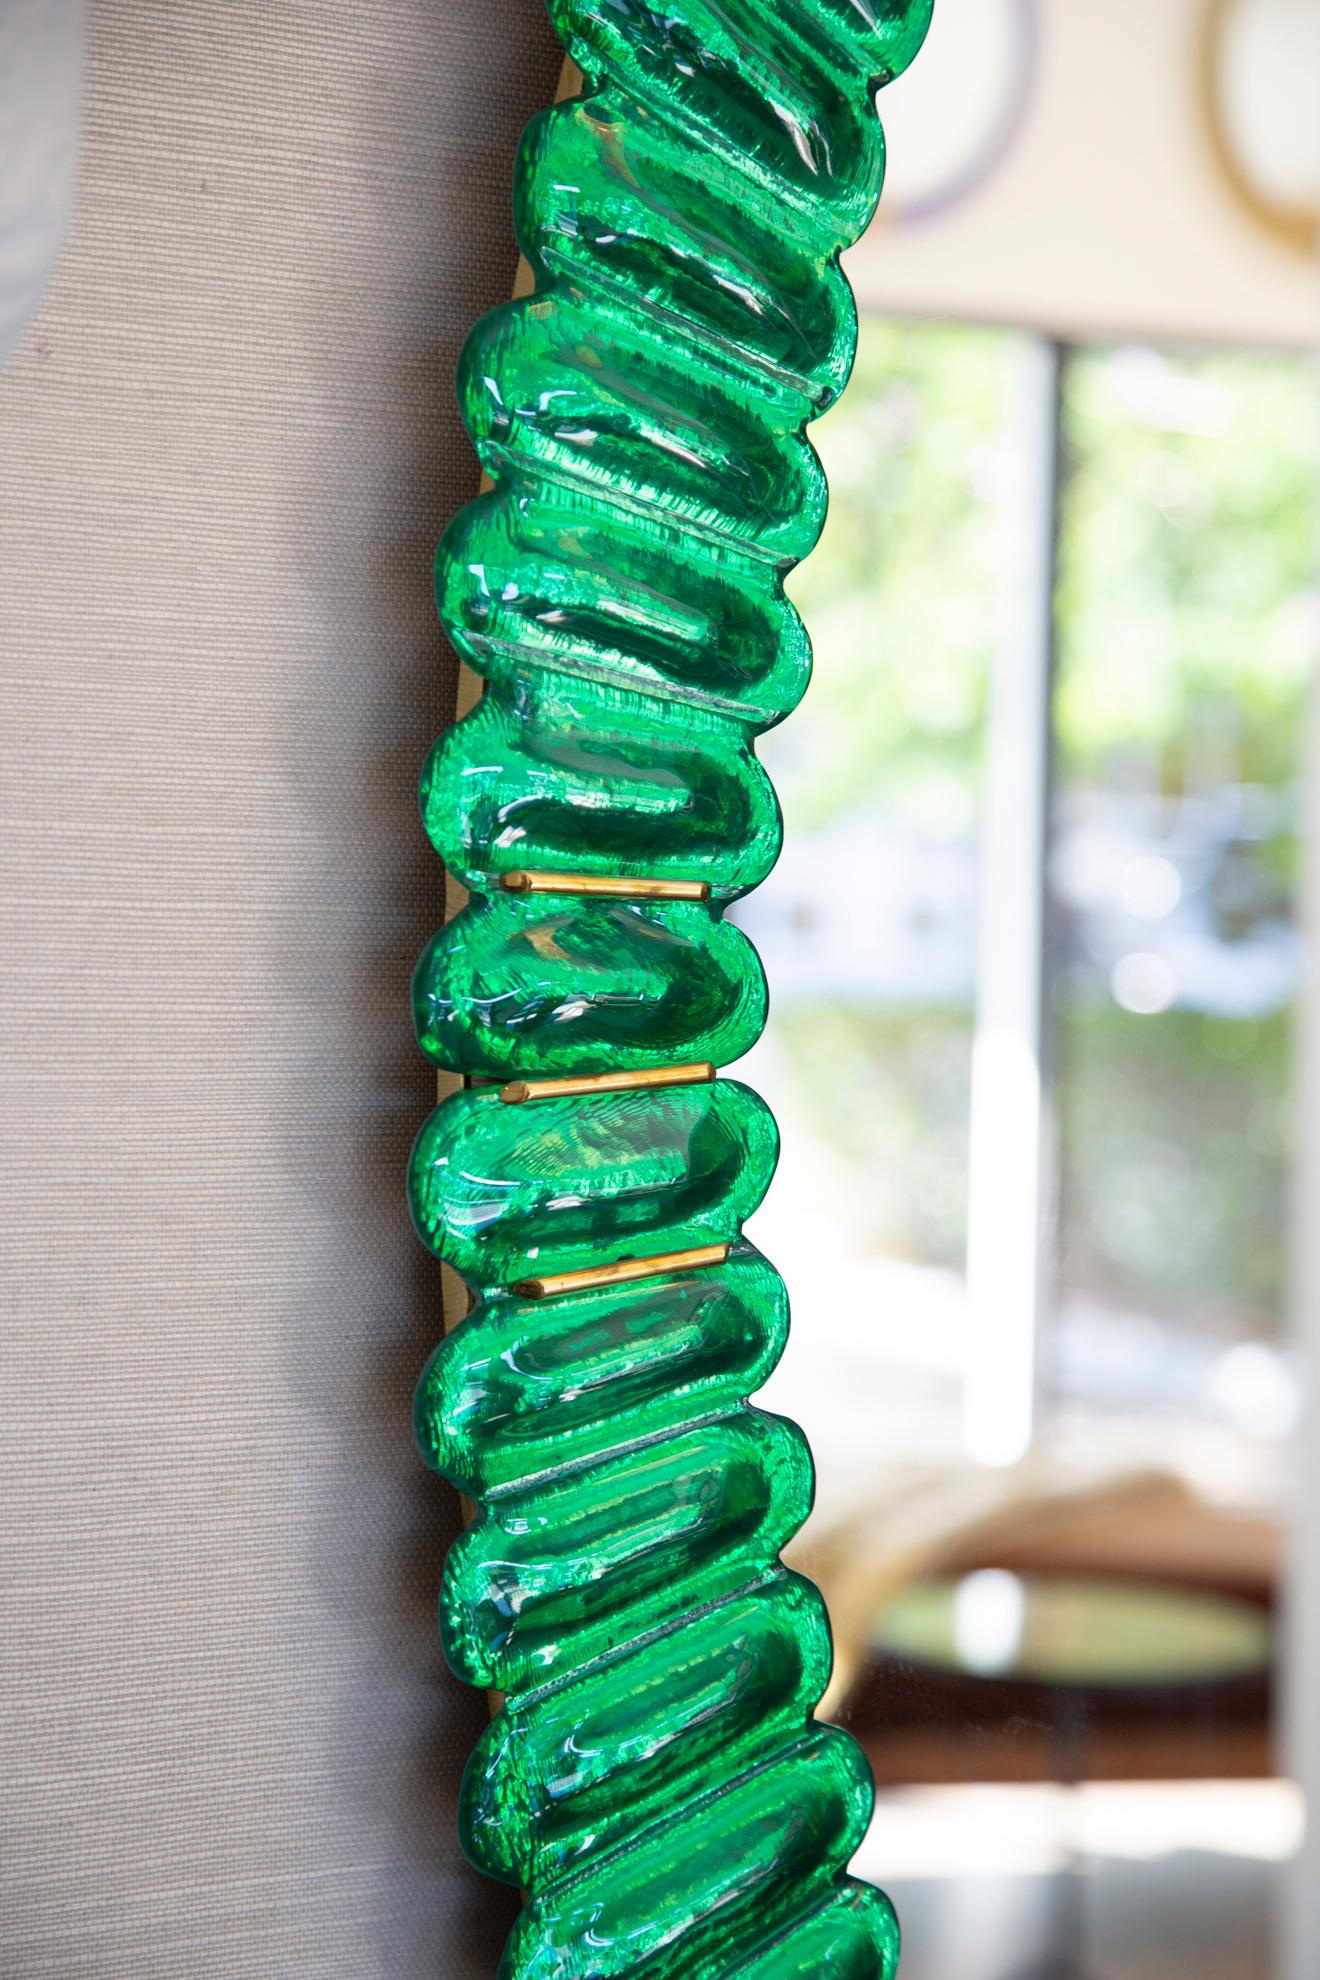 Miroir ovale en verre de Murano vert Kelly, en stock 
Miroir contemporain ovale avec un cadre en verre murano vert Kelly intense et festonné. 
Accents en laiton
Fabriqué à la main par une équipe d'artisans en Italie
Peut être facilement accroché